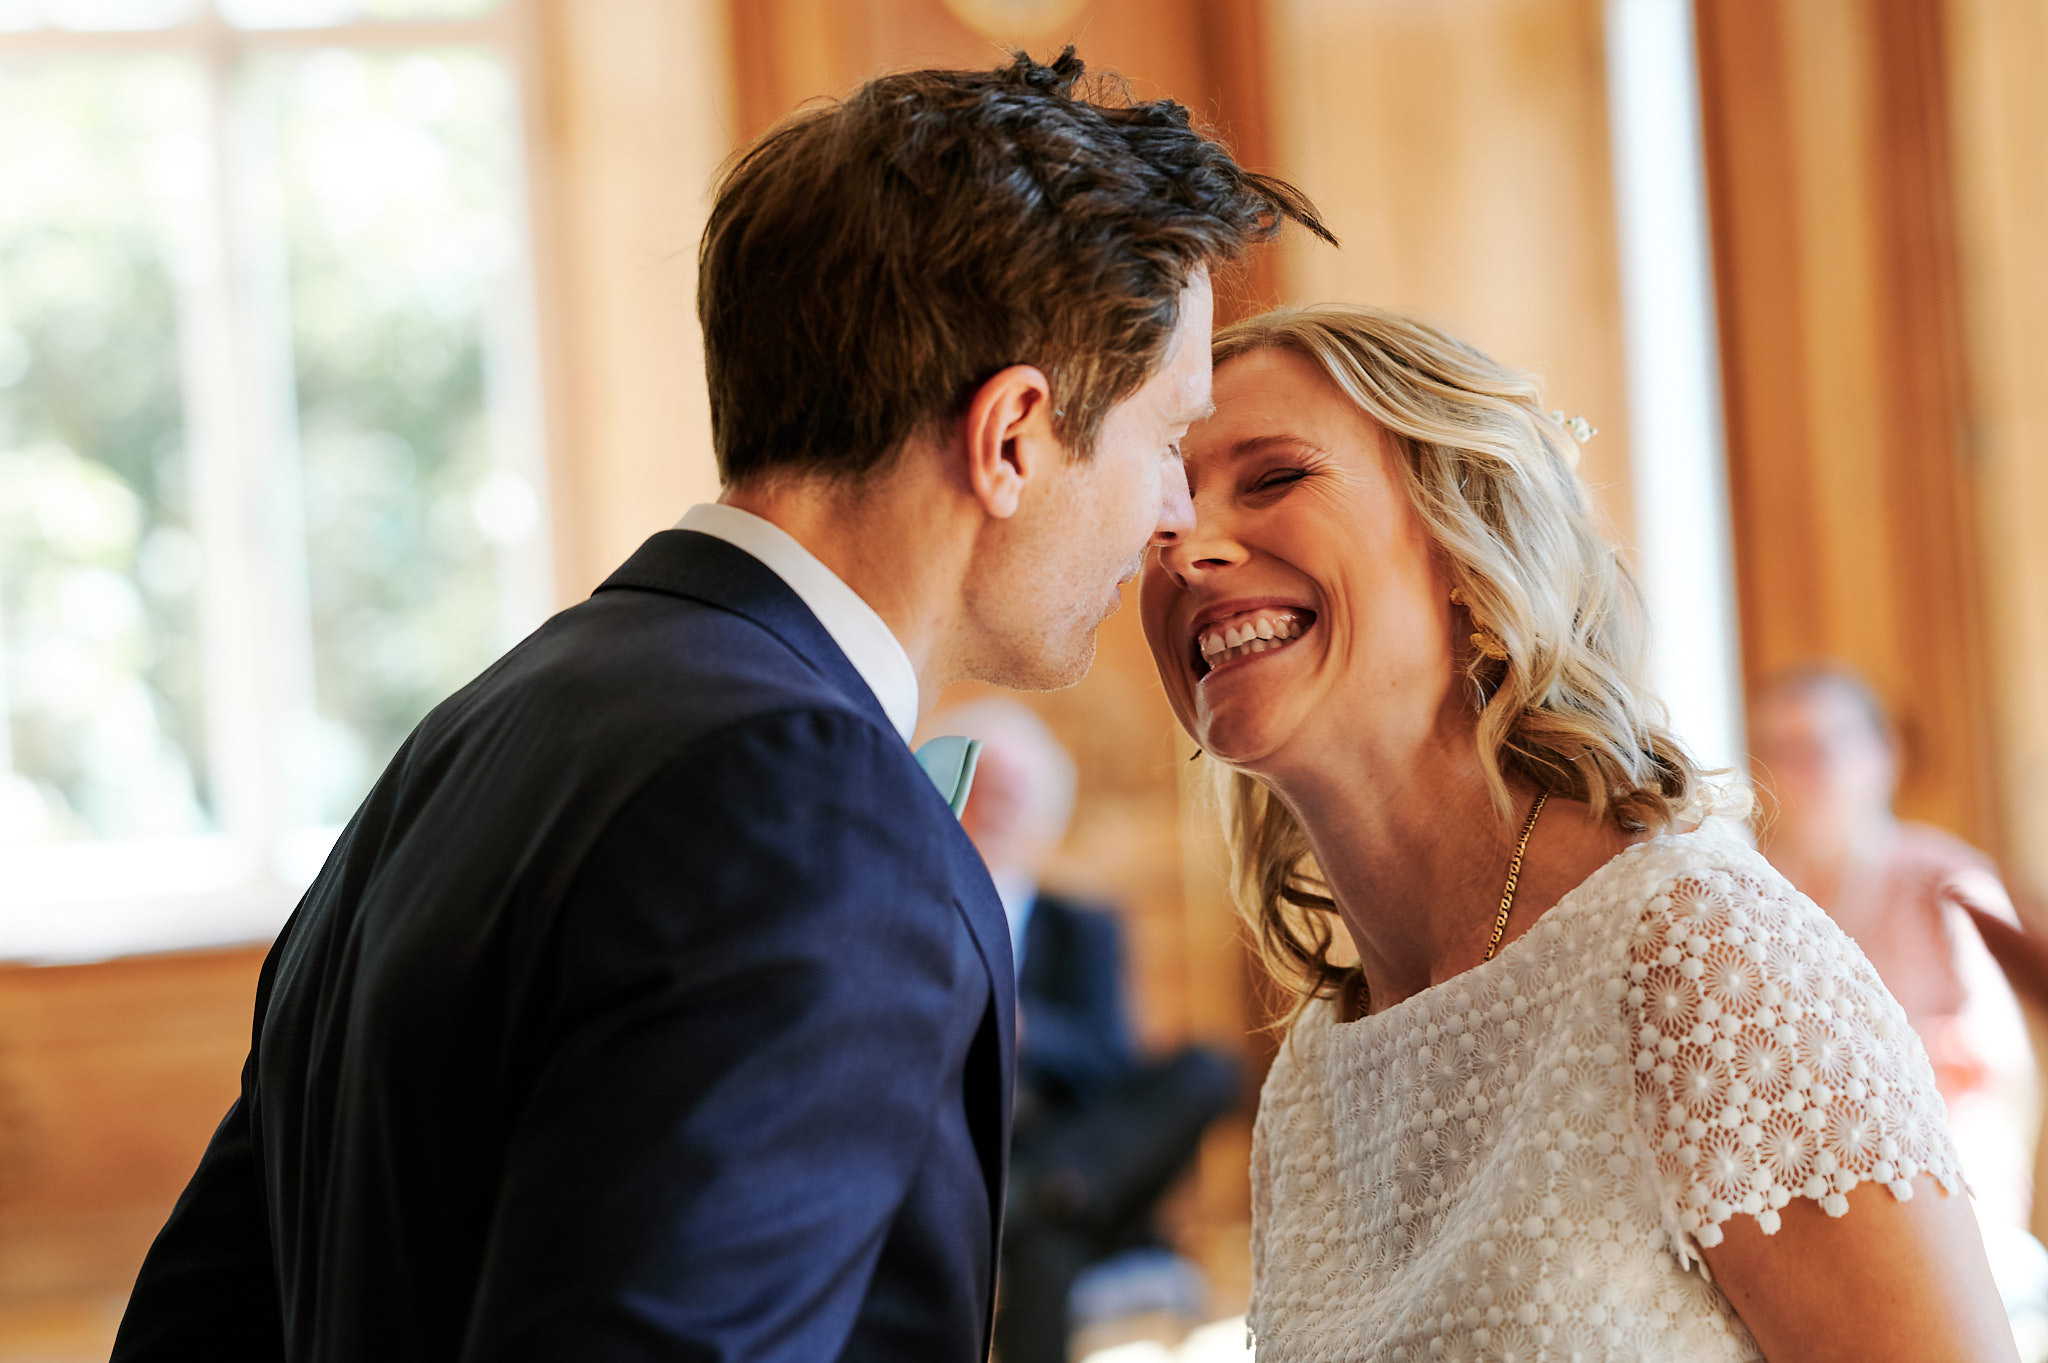 Ein glückliches Paar in formeller Kleidung teilt einen freudigen Moment bei seiner Hochzeit auf Schloss, wobei die Frau lacht und der Mann lächelt, während sie sich eng aneinander lehnen.